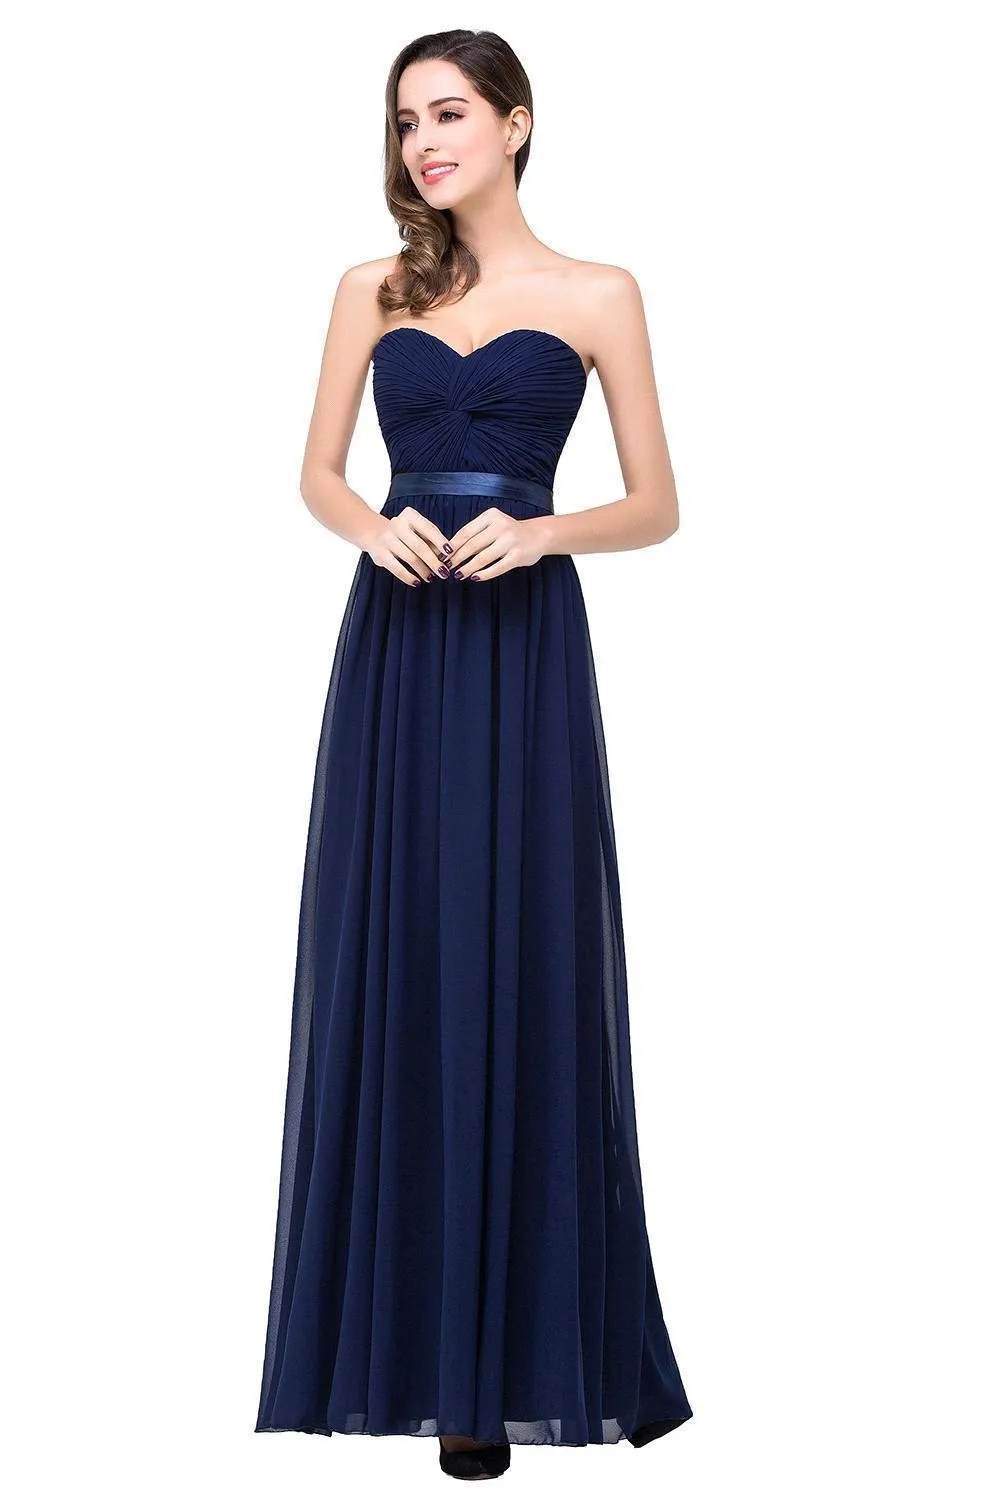 FATAPAESE официальное вечернее платье элегантное шифоновое бордовое женское длинное